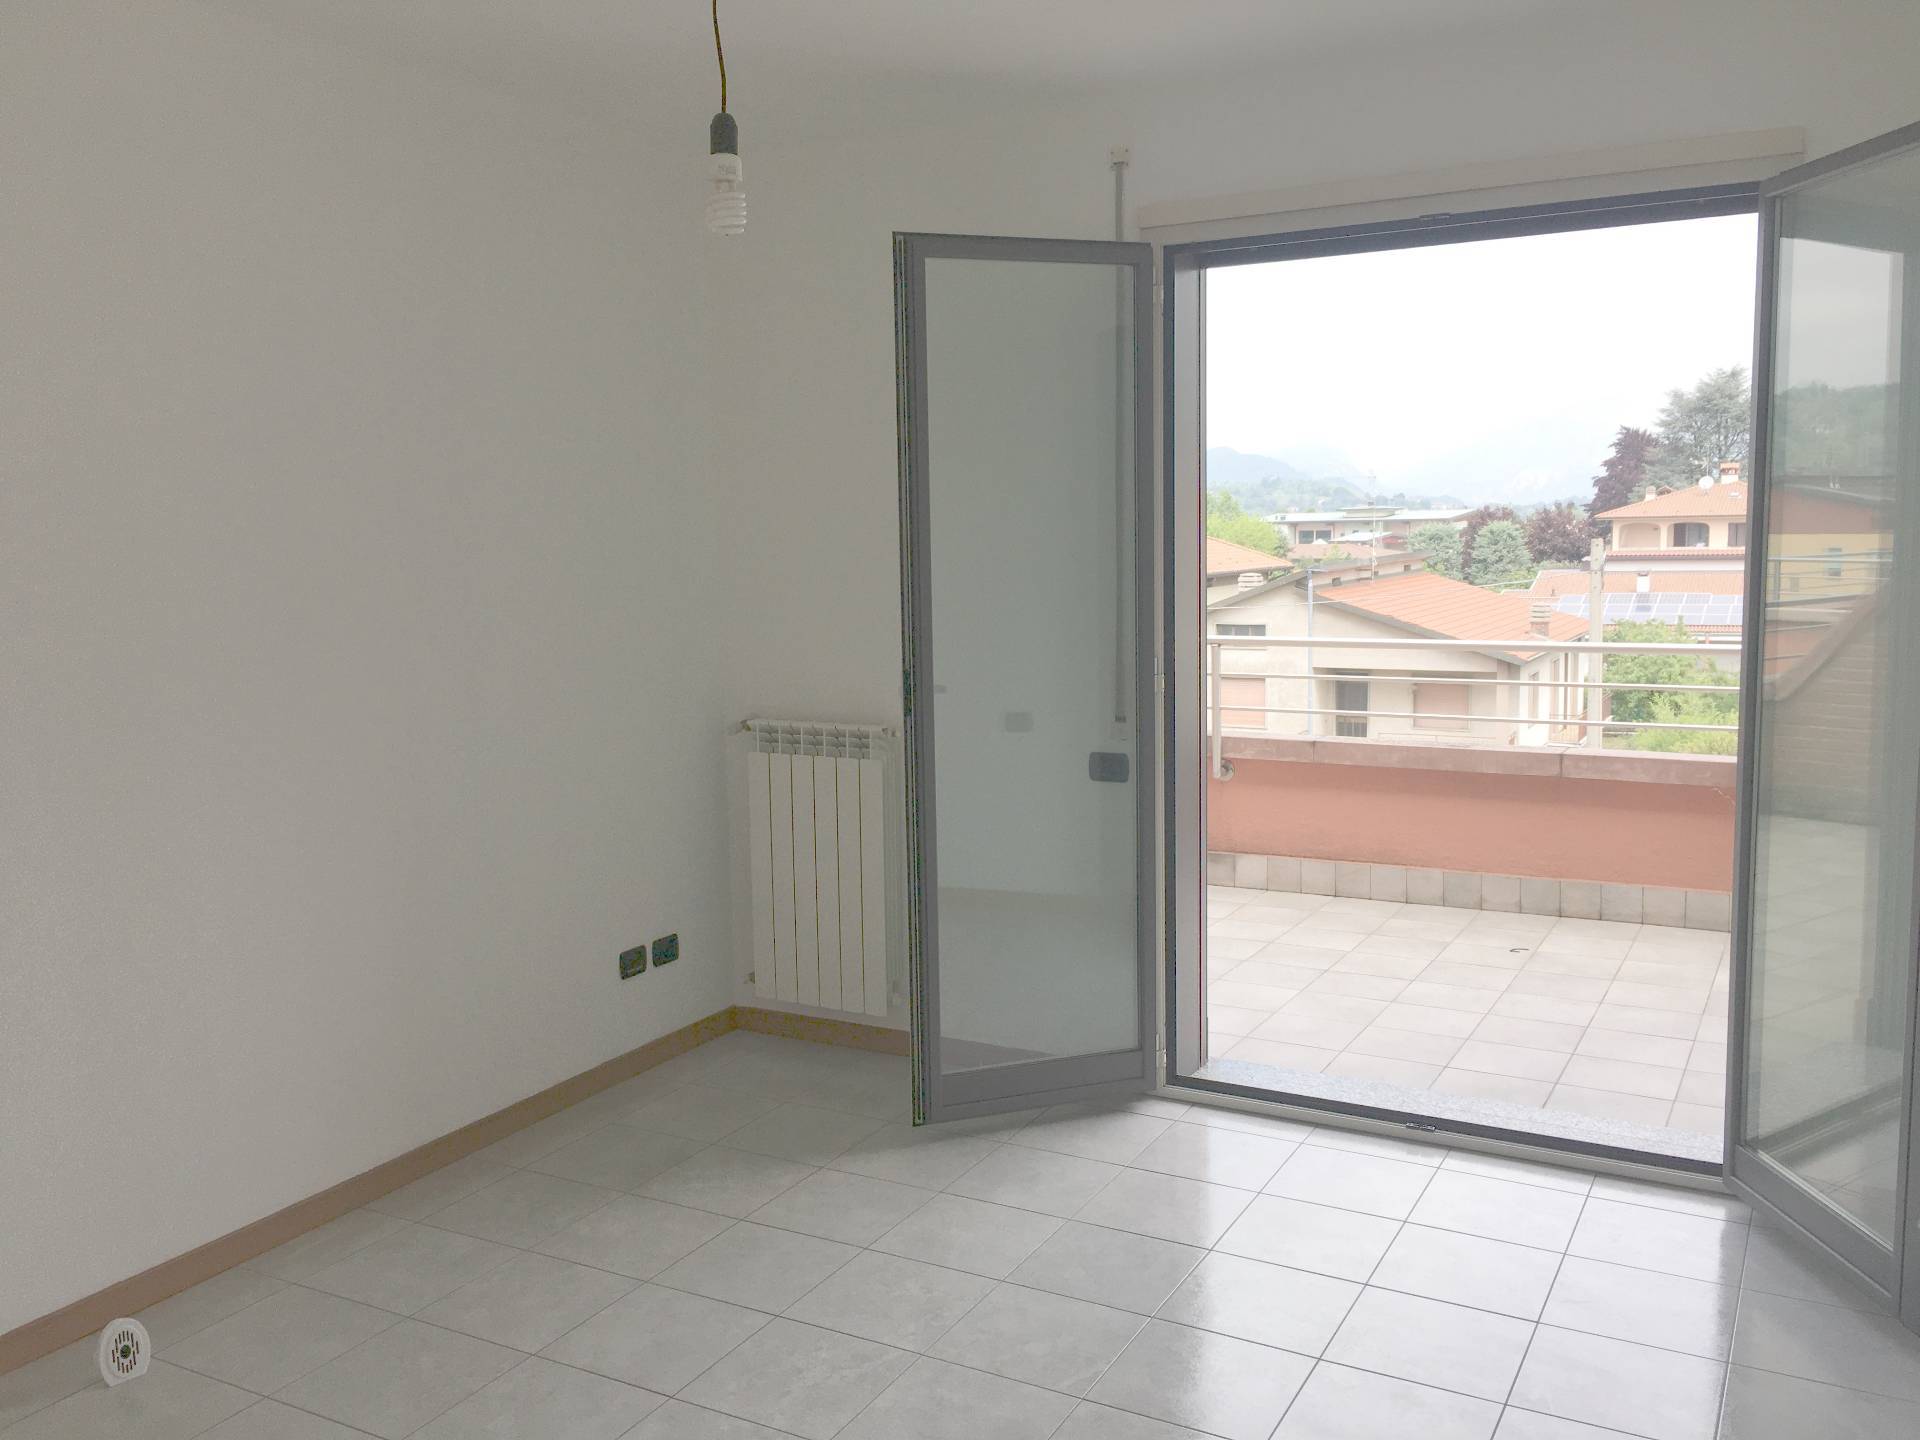 Appartamento in affitto a Villa d'Adda, 1 locali, prezzo € 450 | PortaleAgenzieImmobiliari.it